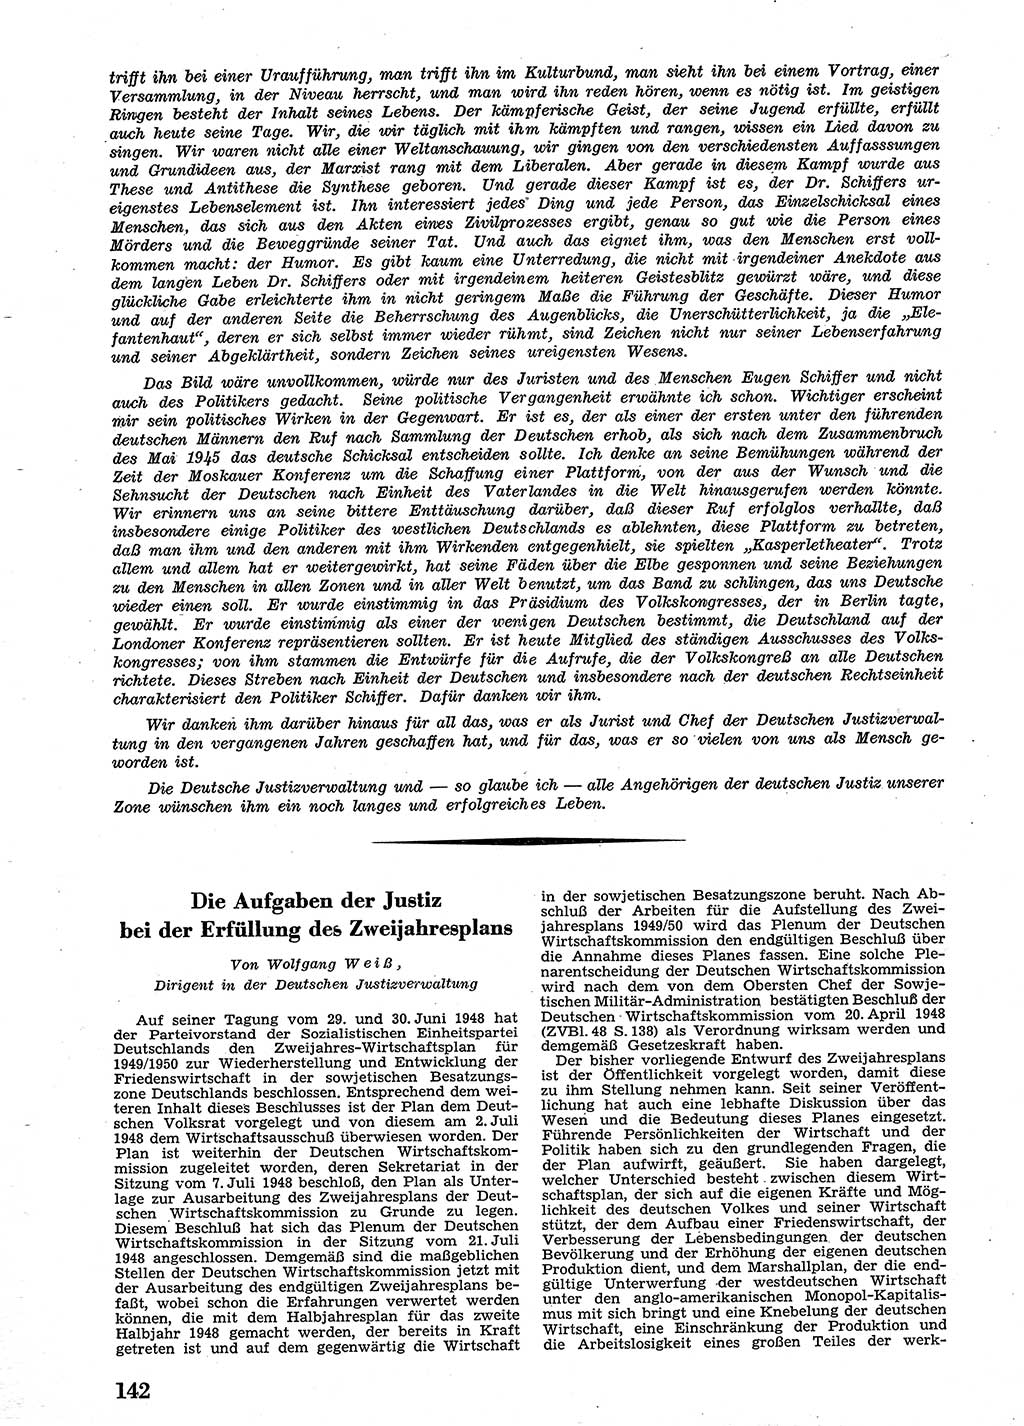 Neue Justiz (NJ), Zeitschrift für Recht und Rechtswissenschaft [Sowjetische Besatzungszone (SBZ) Deutschland], 2. Jahrgang 1948, Seite 142 (NJ SBZ Dtl. 1948, S. 142)